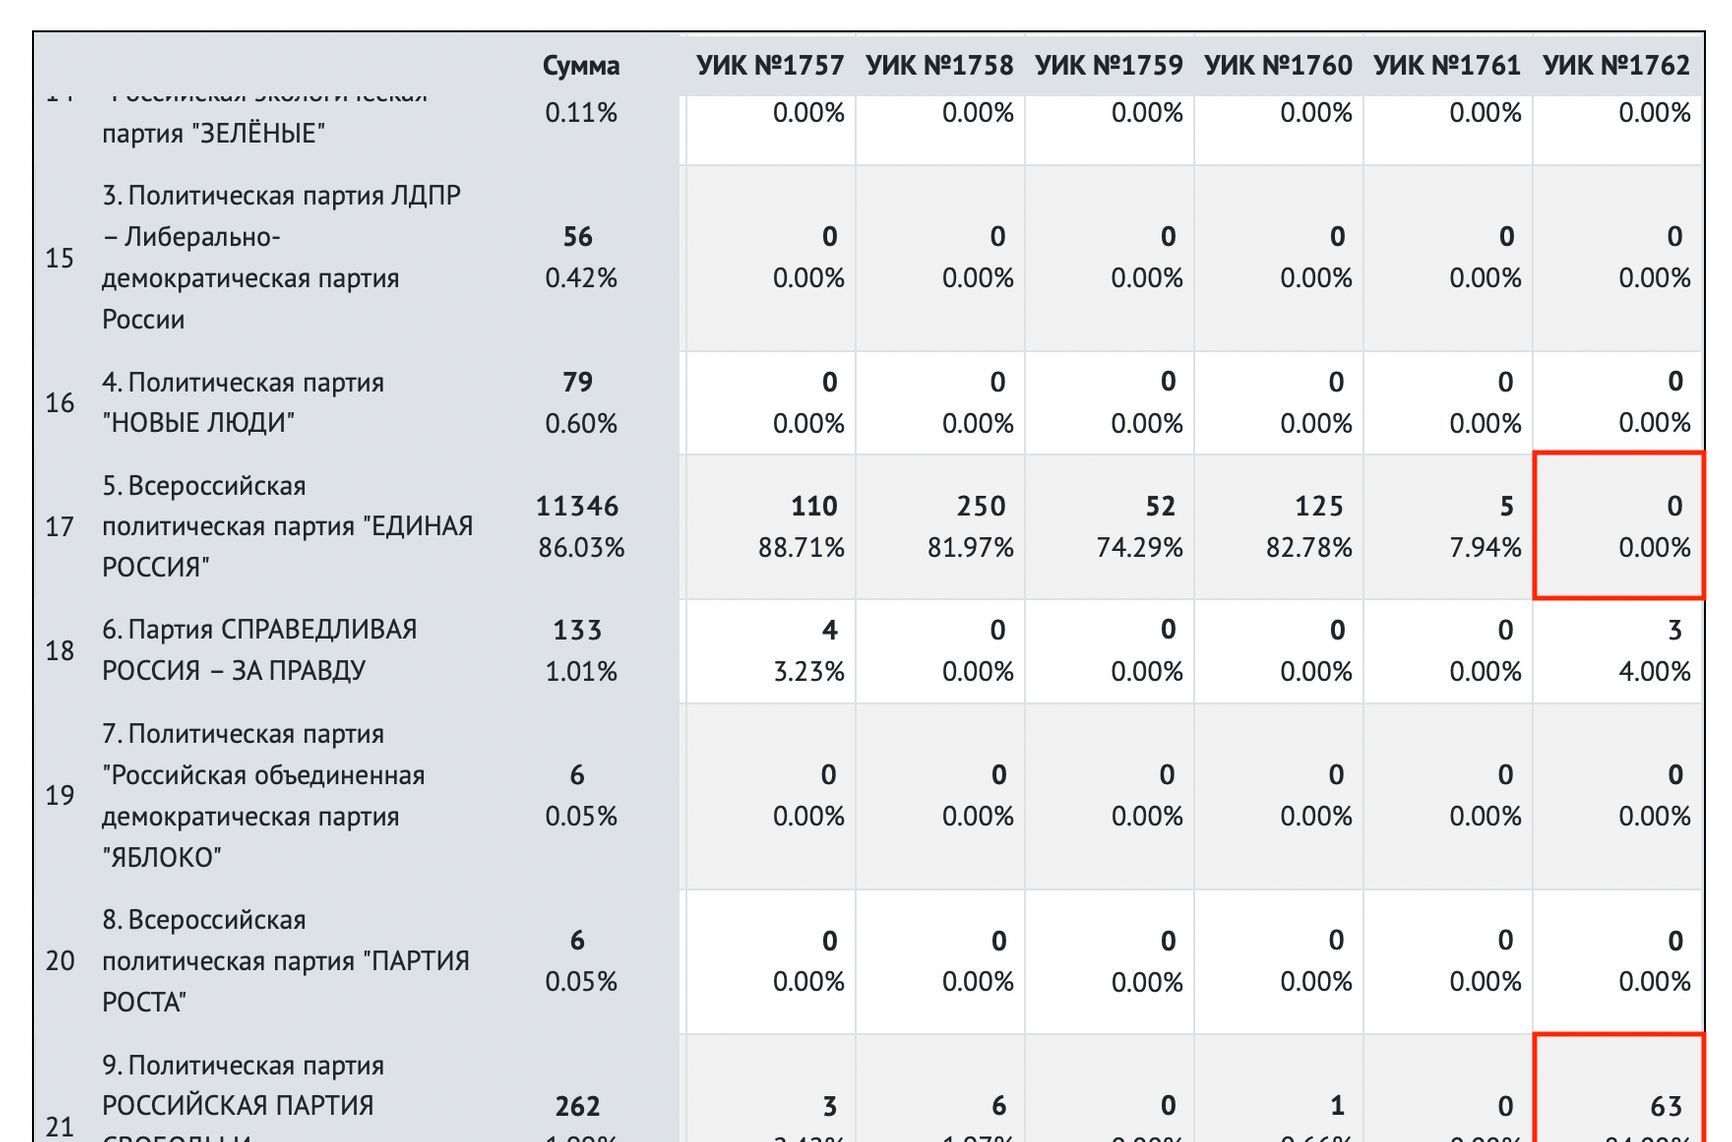 ДВК одразу в декількох регіонах показали нульовий результат у «Єдиної Росії» і величезний відсоток у партій з низьким рейтингом